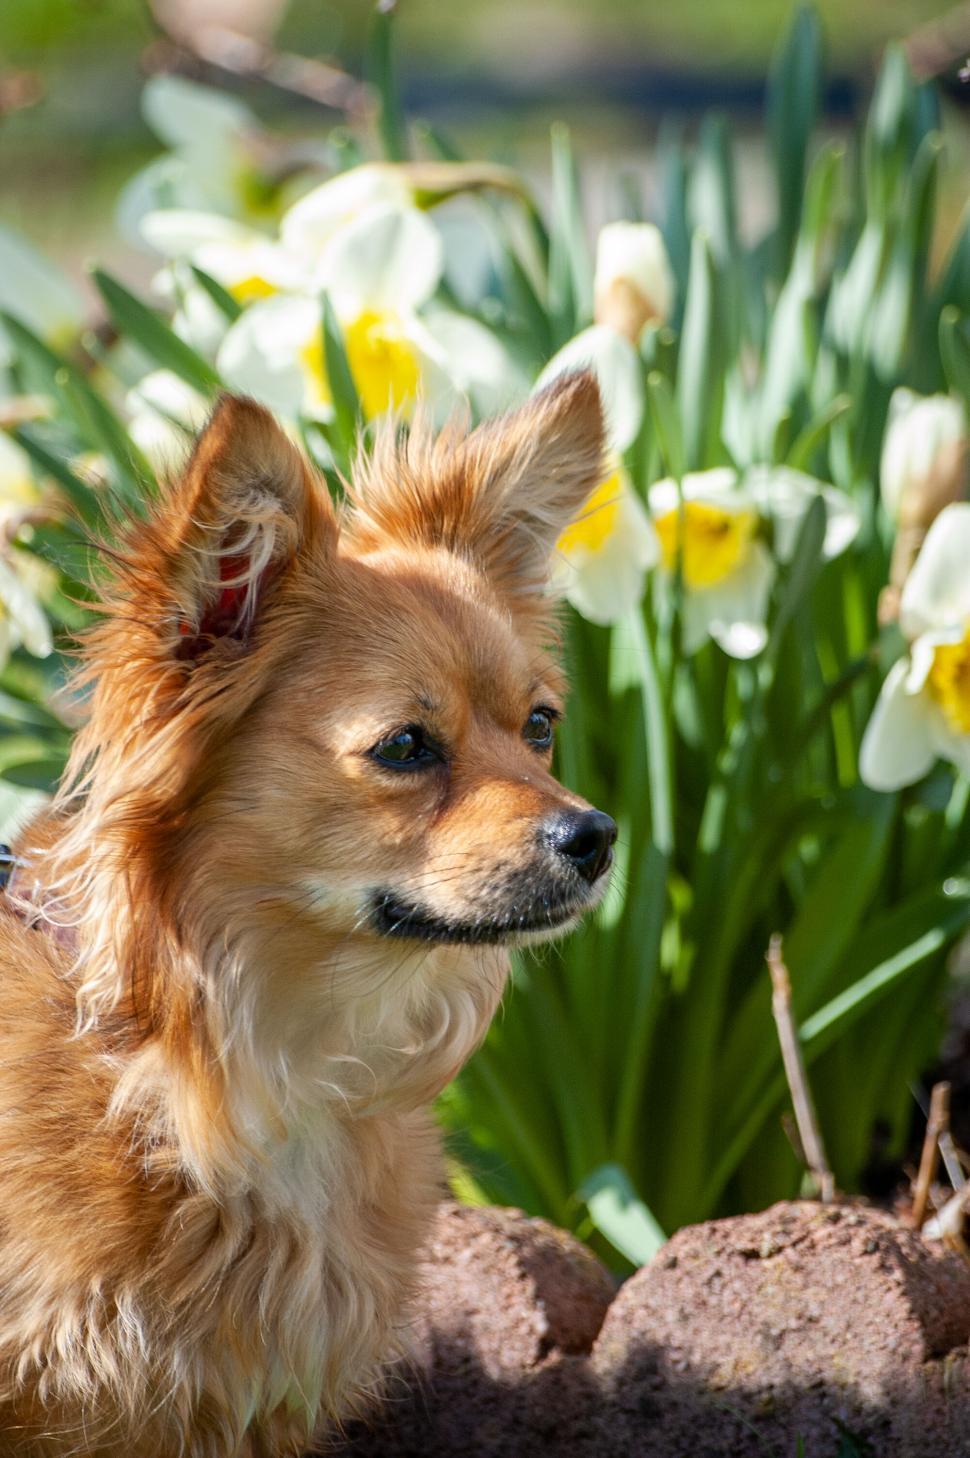 Free Image of Alert small dog among daffodils 